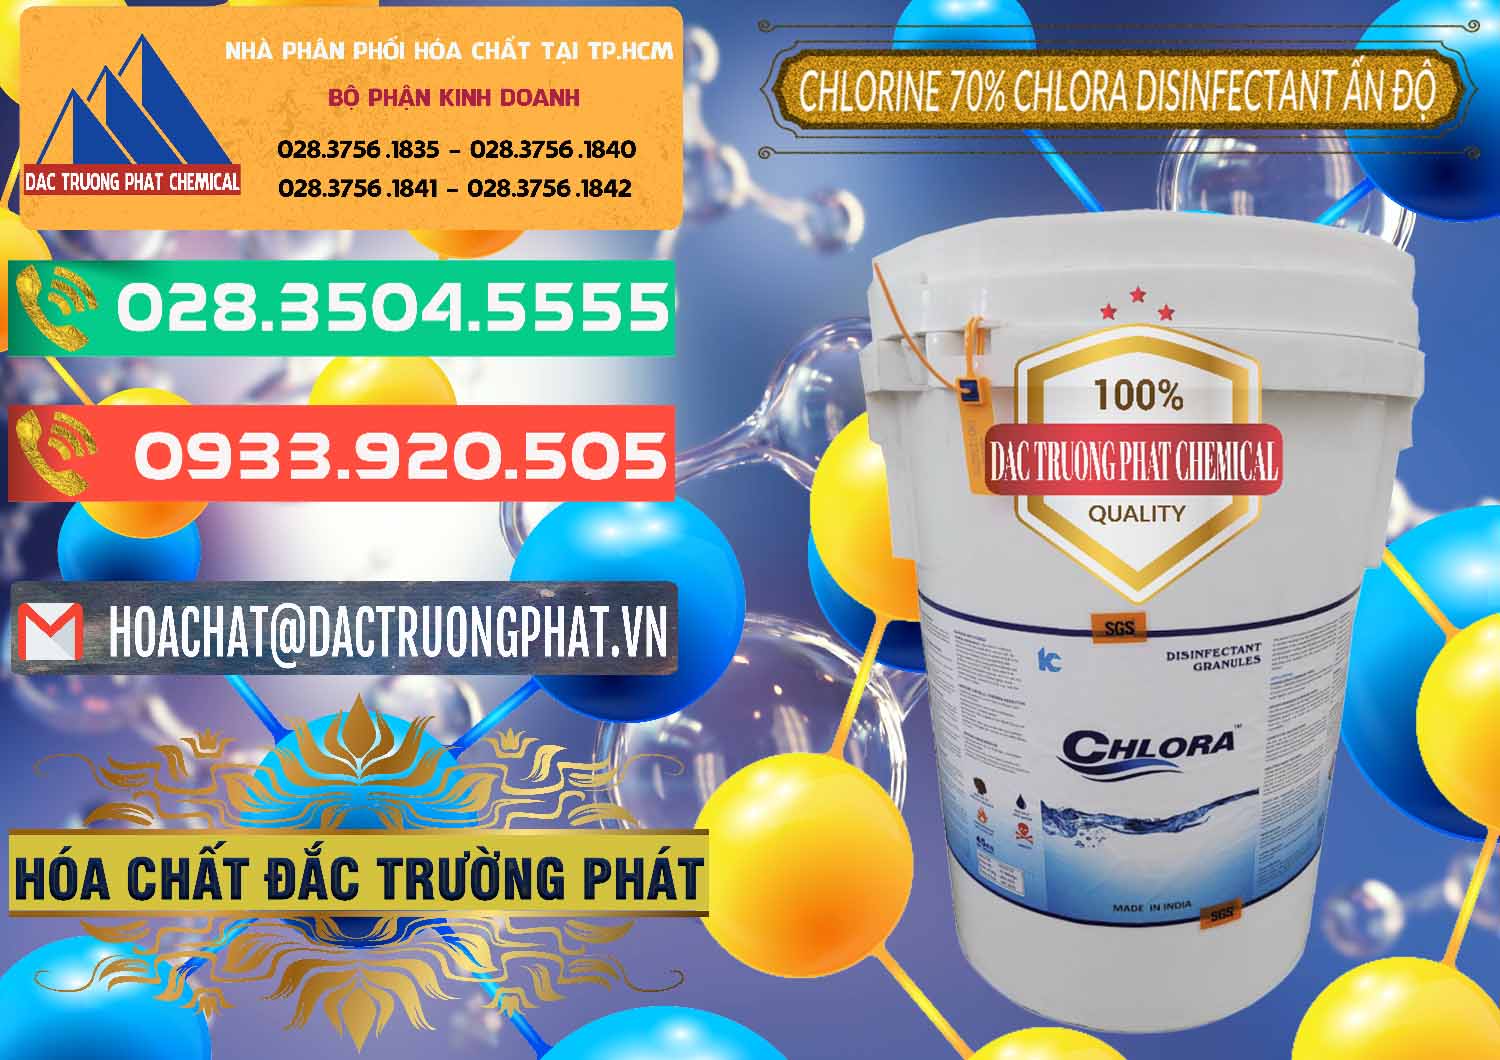 Công ty chuyên phân phối & bán Chlorine – Clorin 70% Chlora Disinfectant Ấn Độ India - 0213 - Cty chuyên phân phối ( bán ) hóa chất tại TP.HCM - congtyhoachat.com.vn